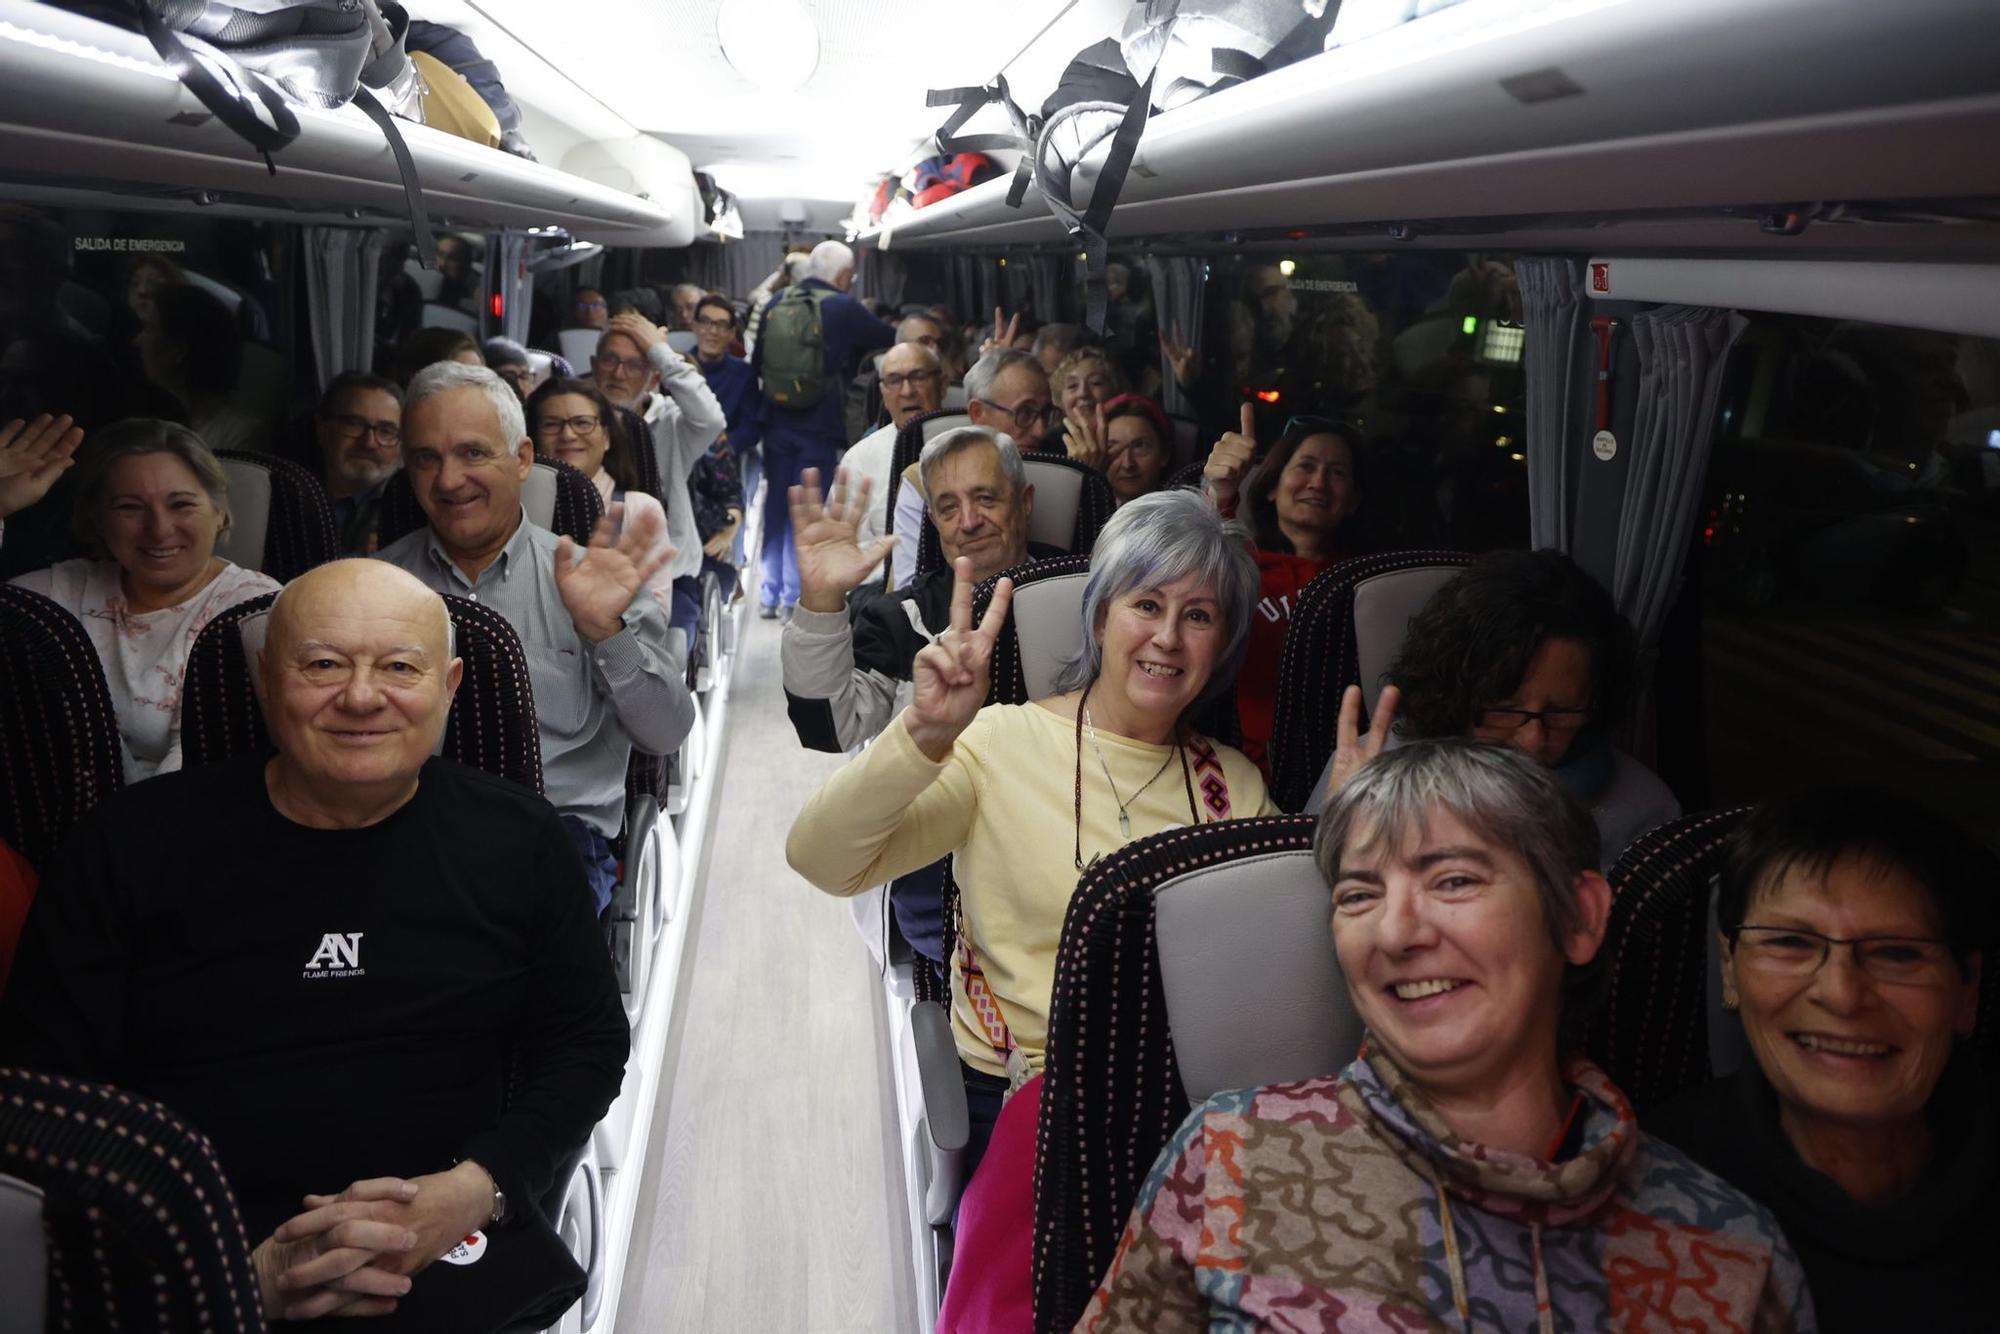 Los participantes, dentro del autobús, han emprendido el viaje con ilusión.